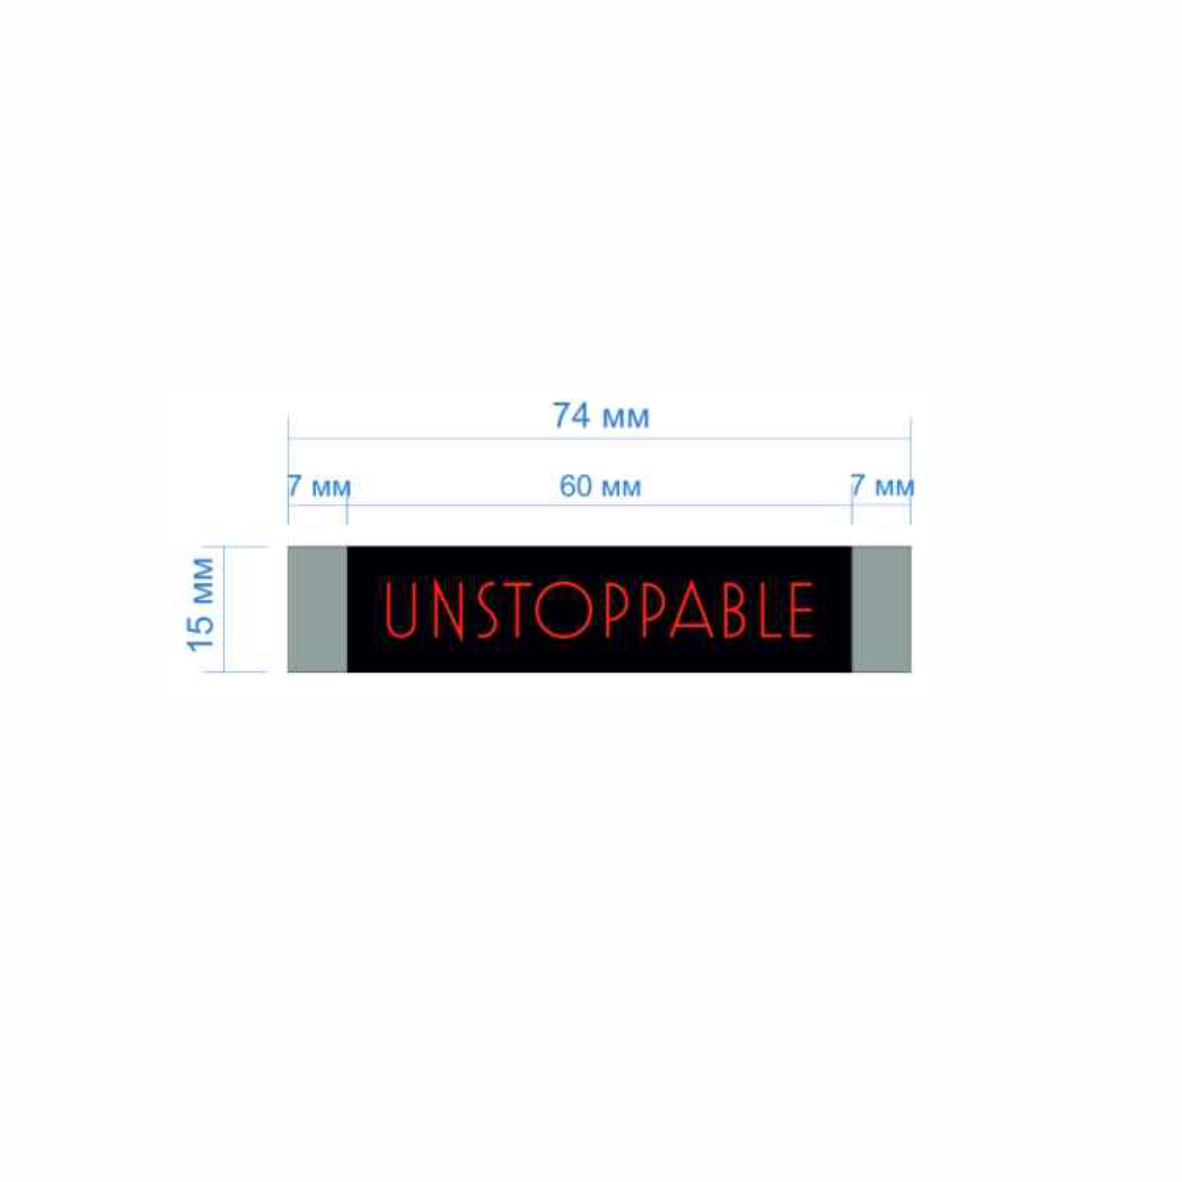 Этикетка тканевая Unstoppable 1,5см черная и красный лого /70 atki/, шт. Вышивка / этикетка тканевая